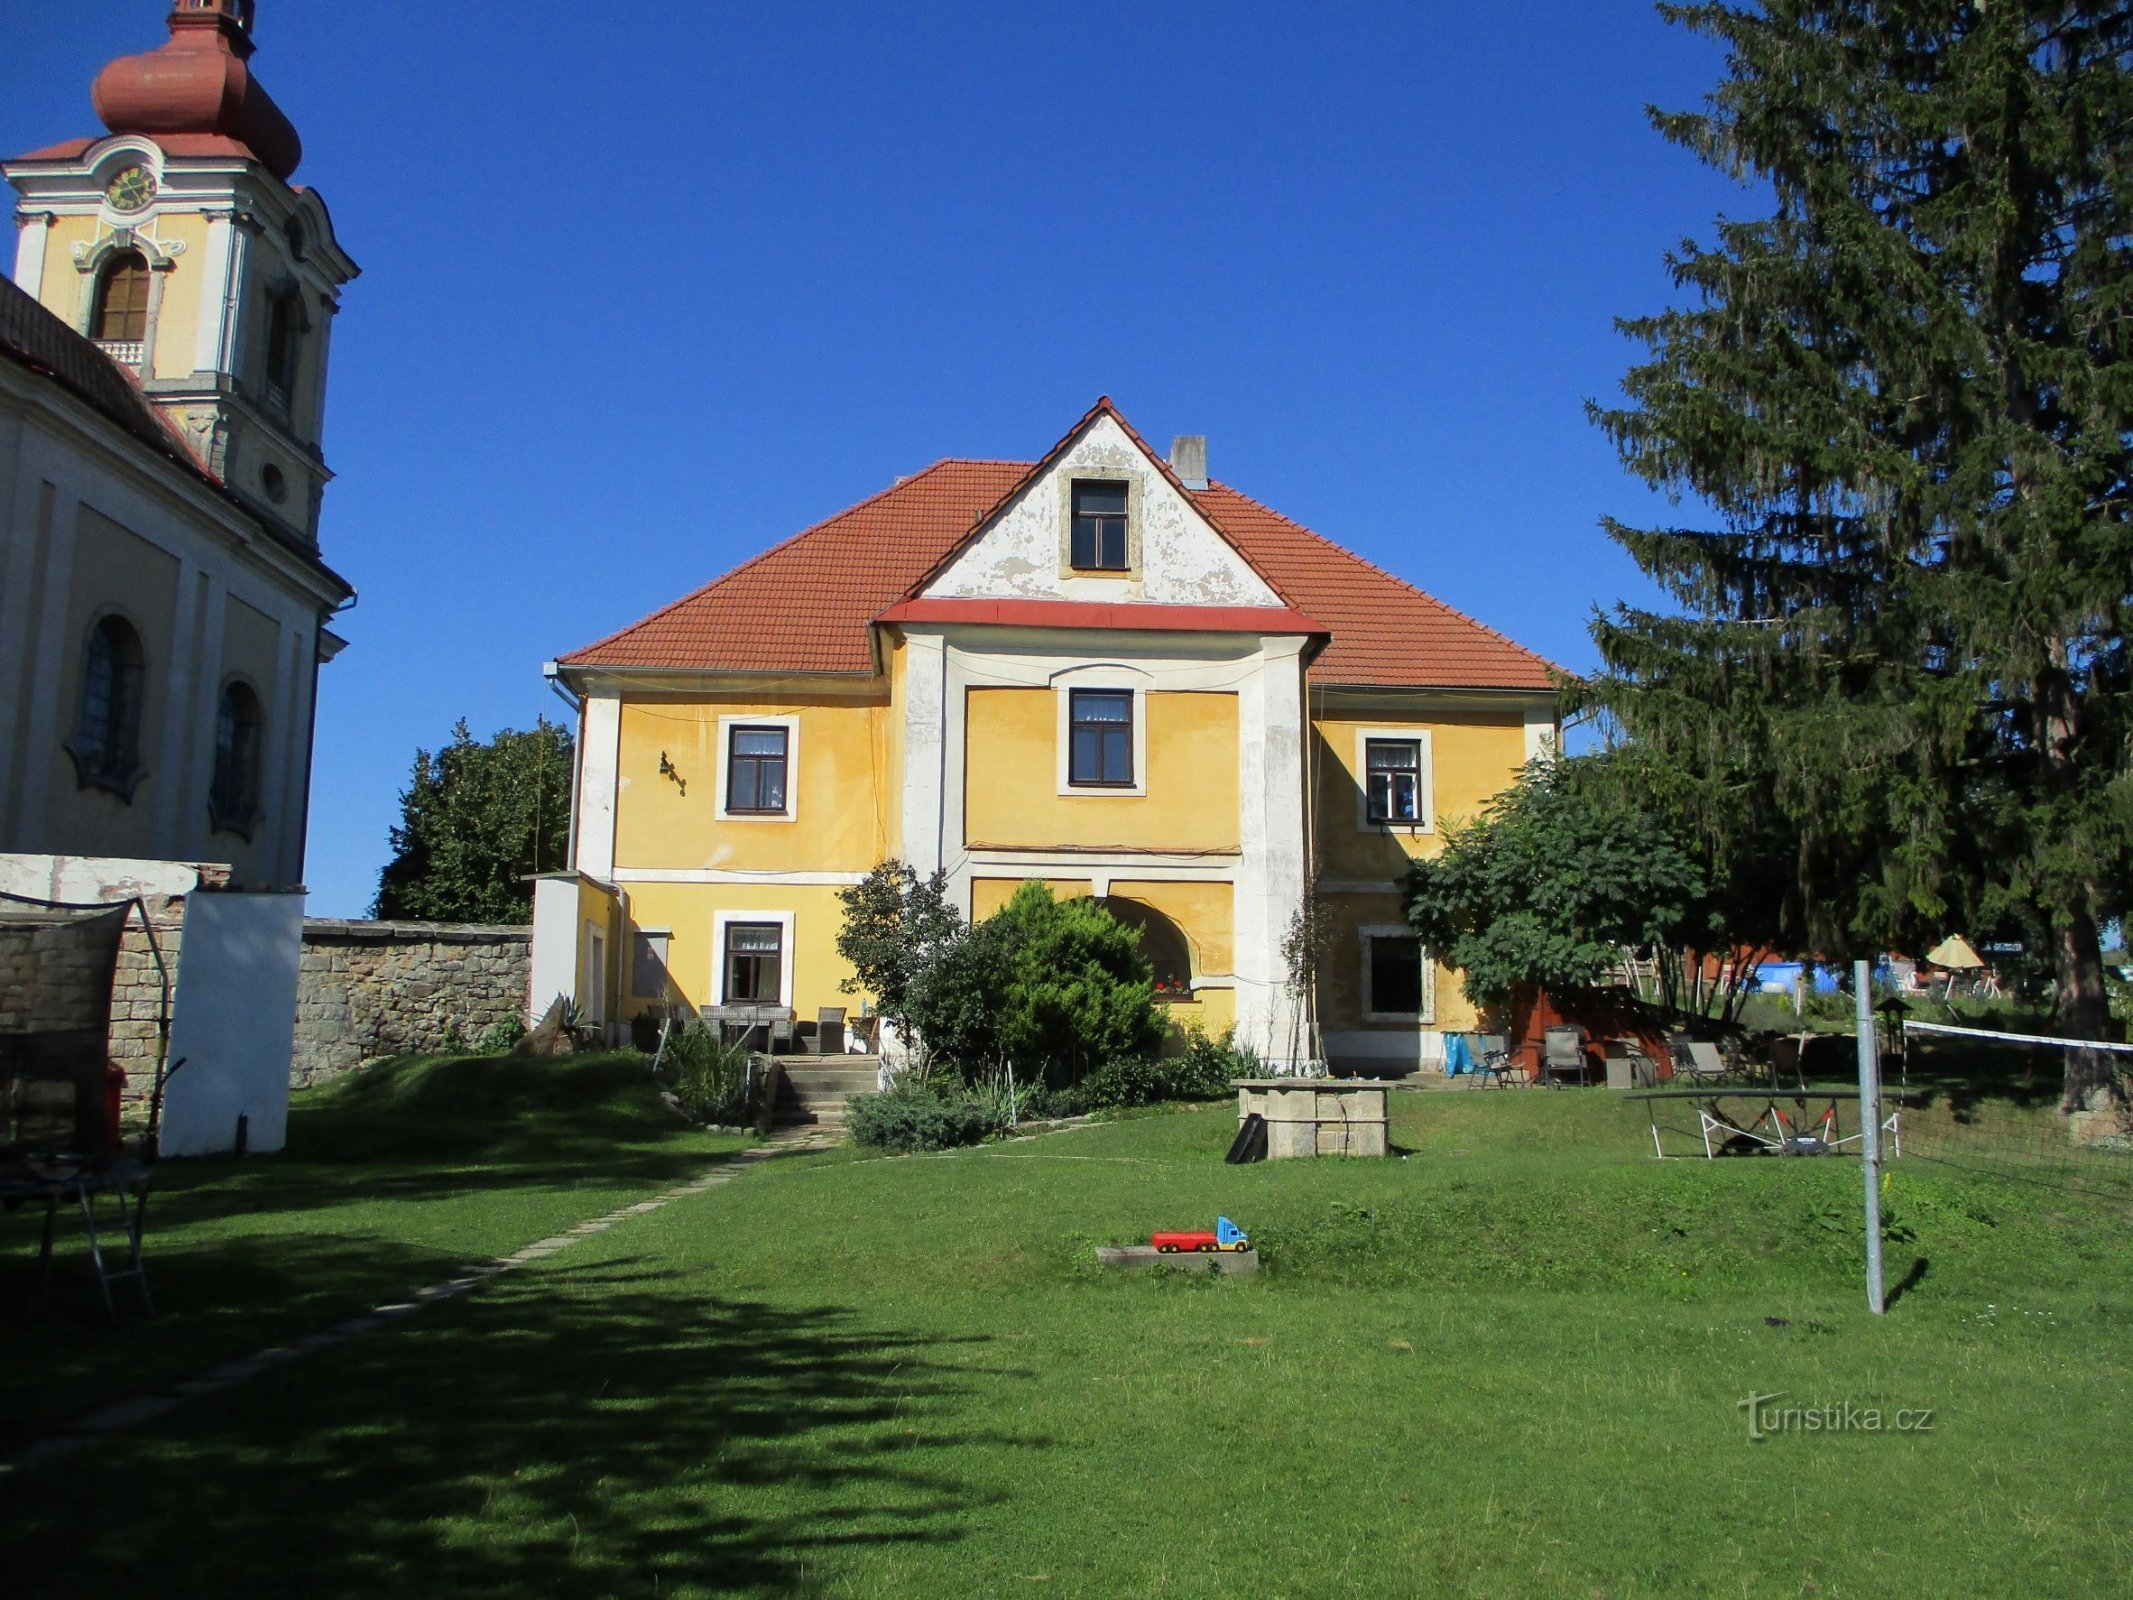 Præstegård nr. 3 (Choustníkovo Hradiště, 4.9.2019. september XNUMX)